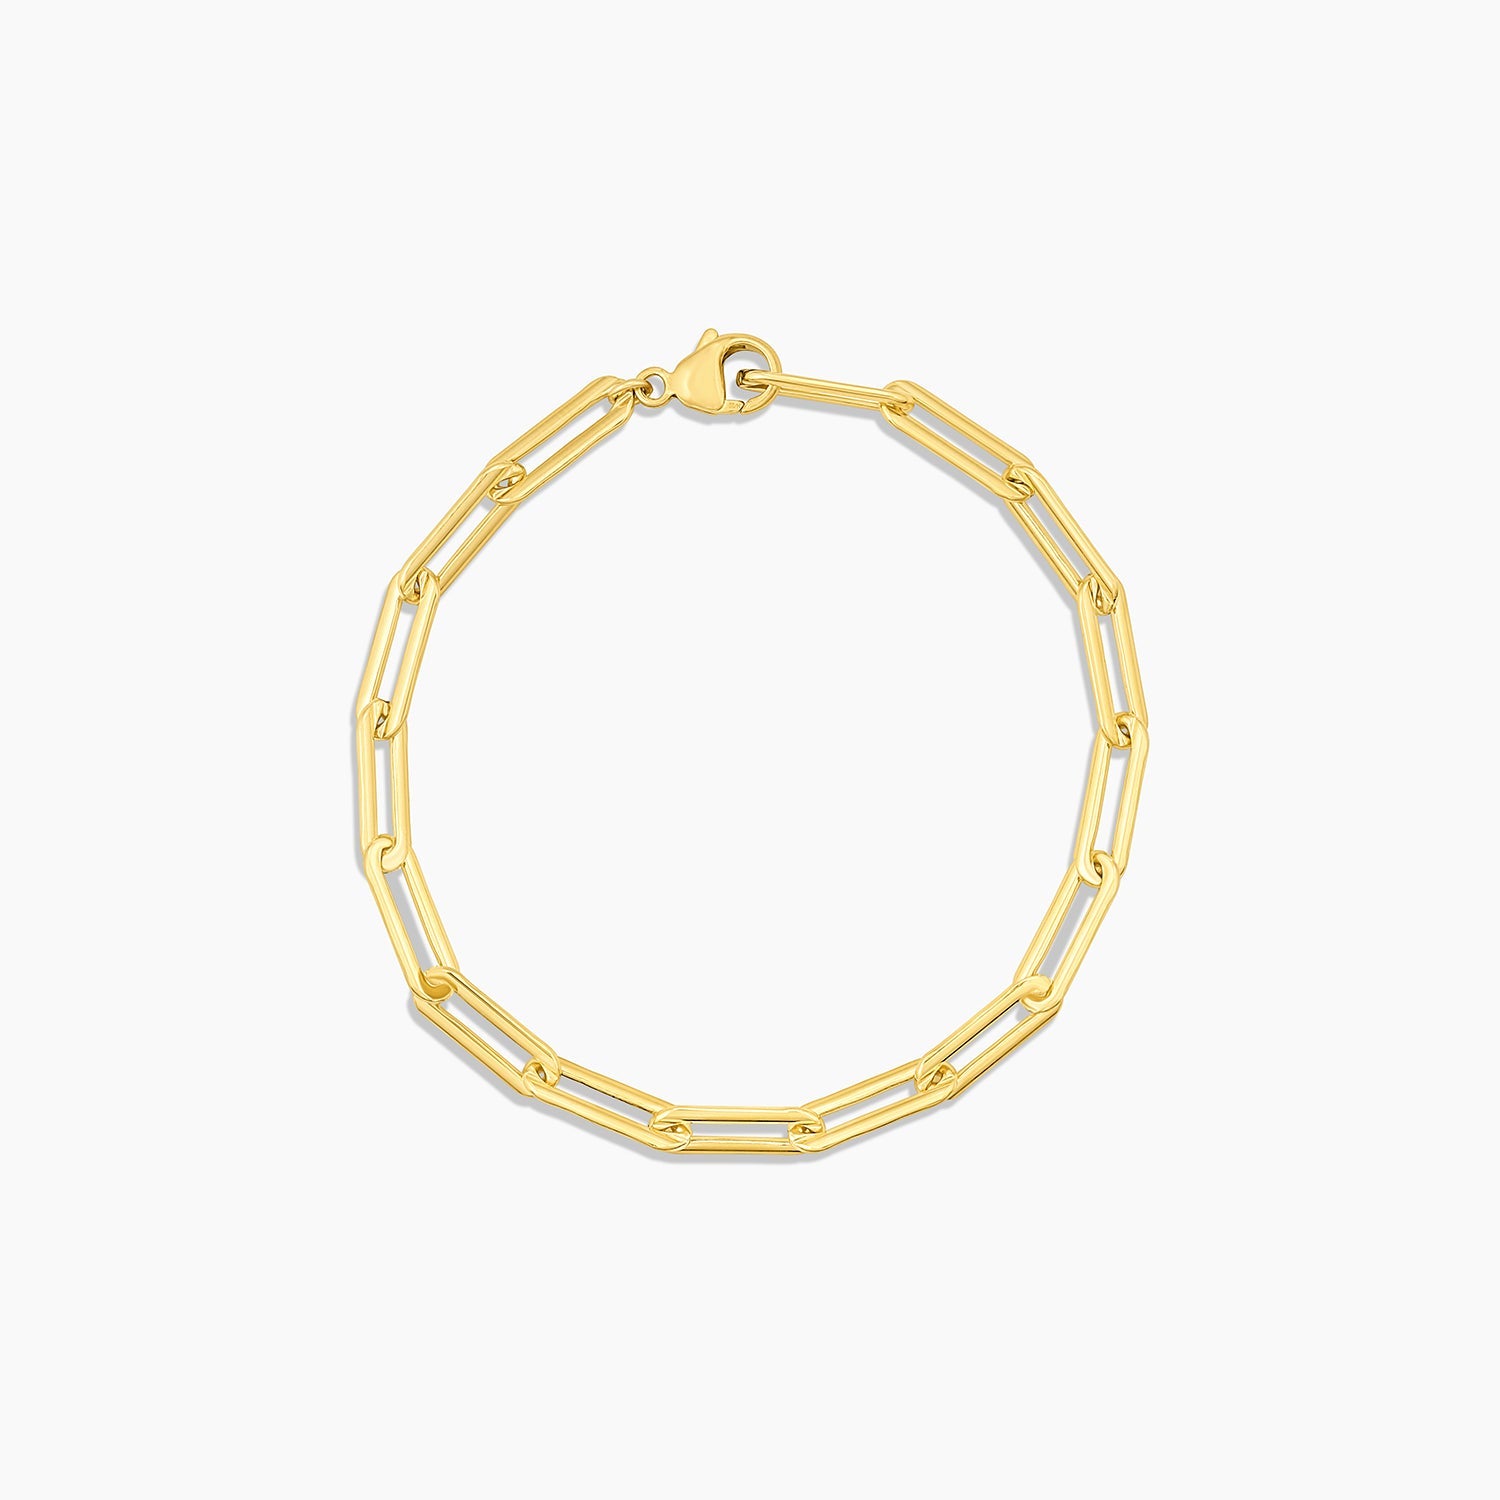 Allegra Bracelet in Gold